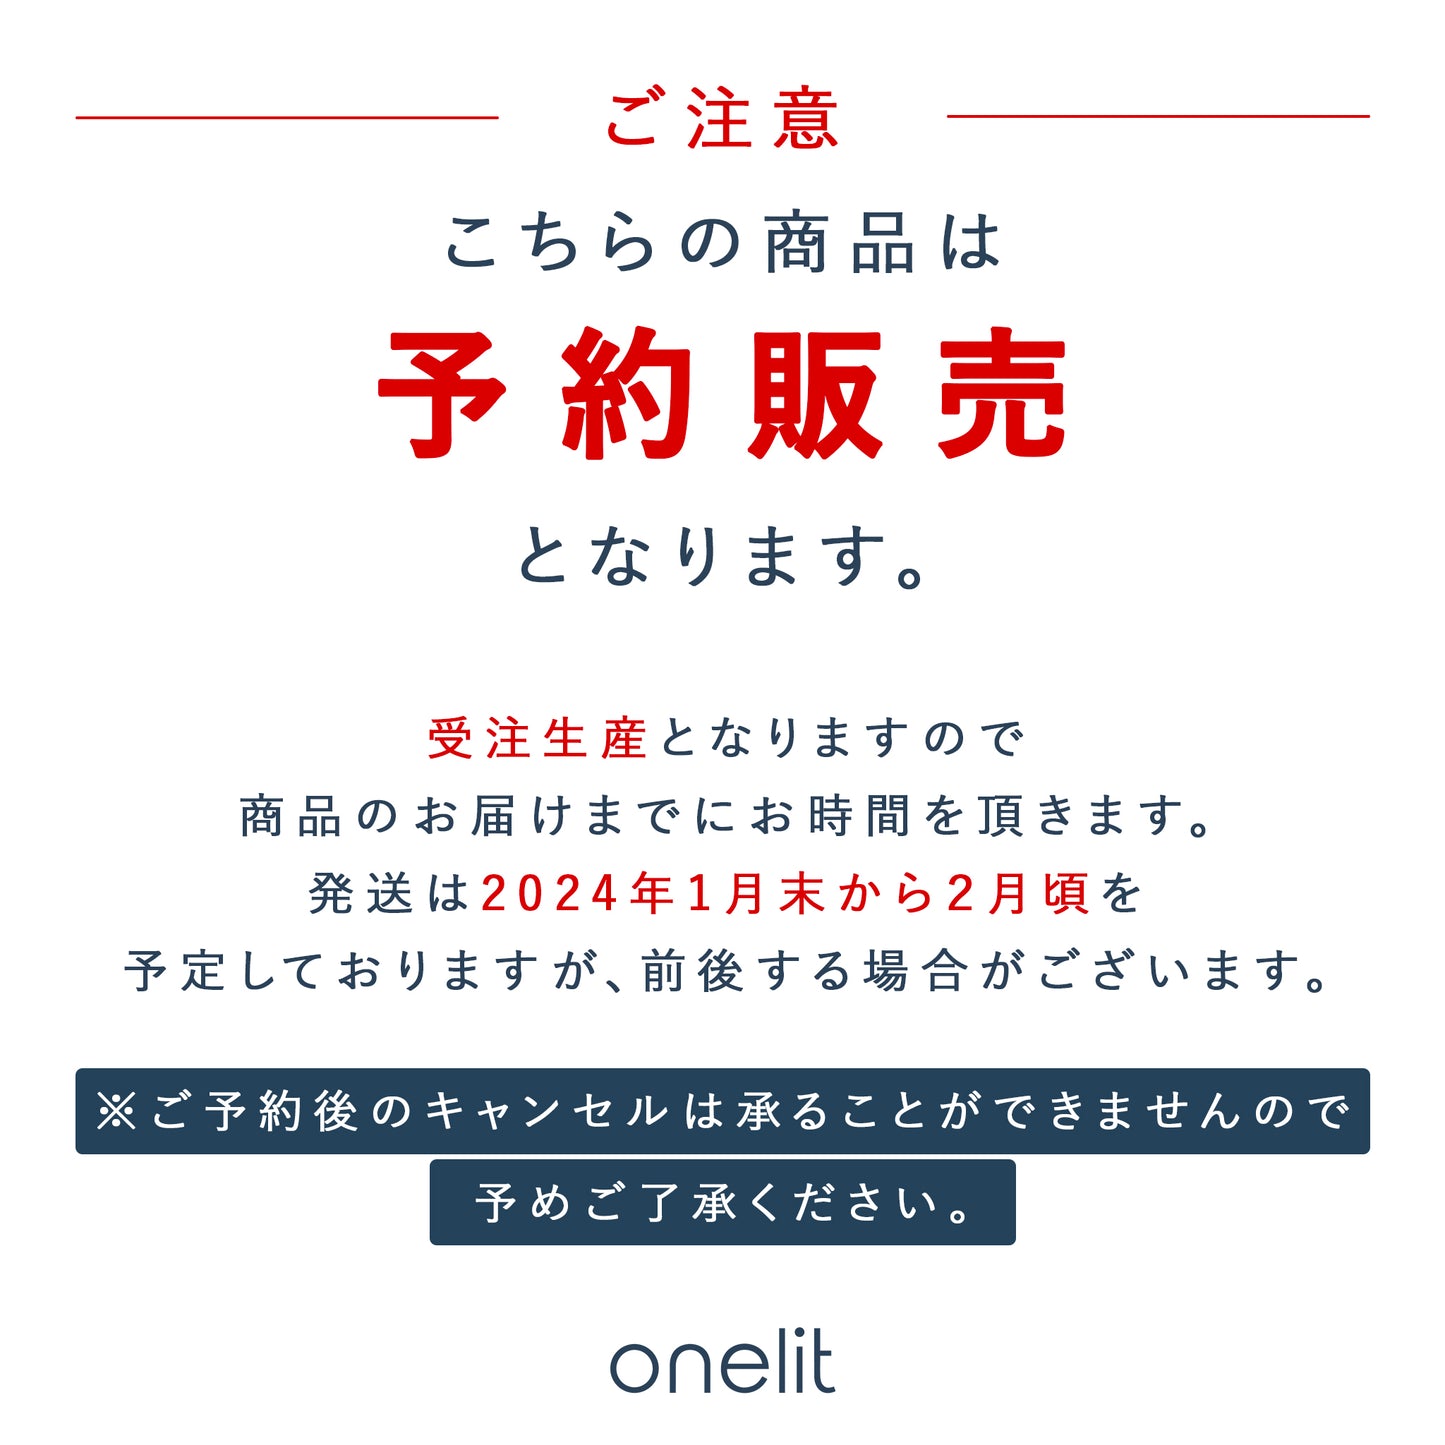 【販売終了】onelit ユニセックス ビッグシルエット パーカー | ダンベルフライデザイン